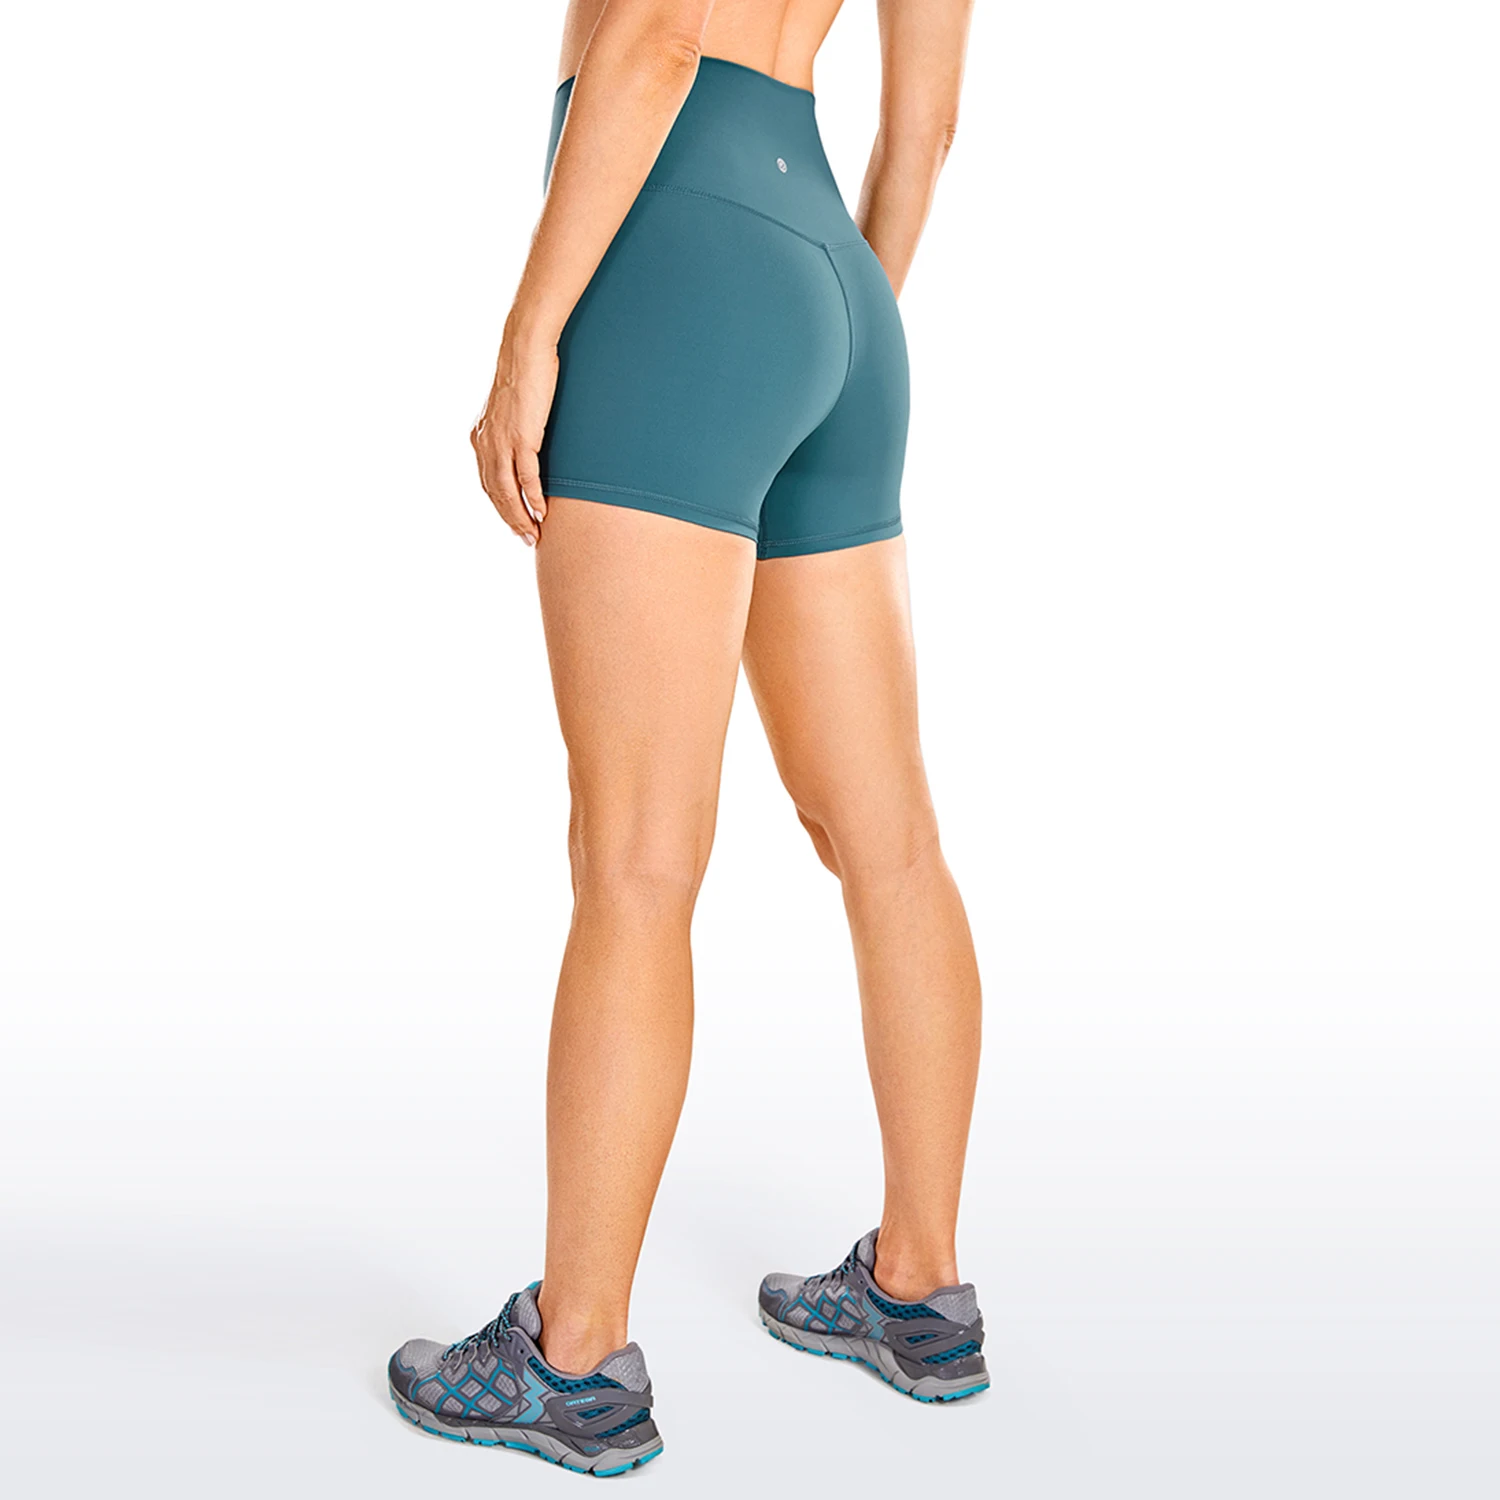 Crz yoga nu sentimento cintura alta treino yoga shorts para mulher atlético  correndo voleibol curto apertado-4 polegadas